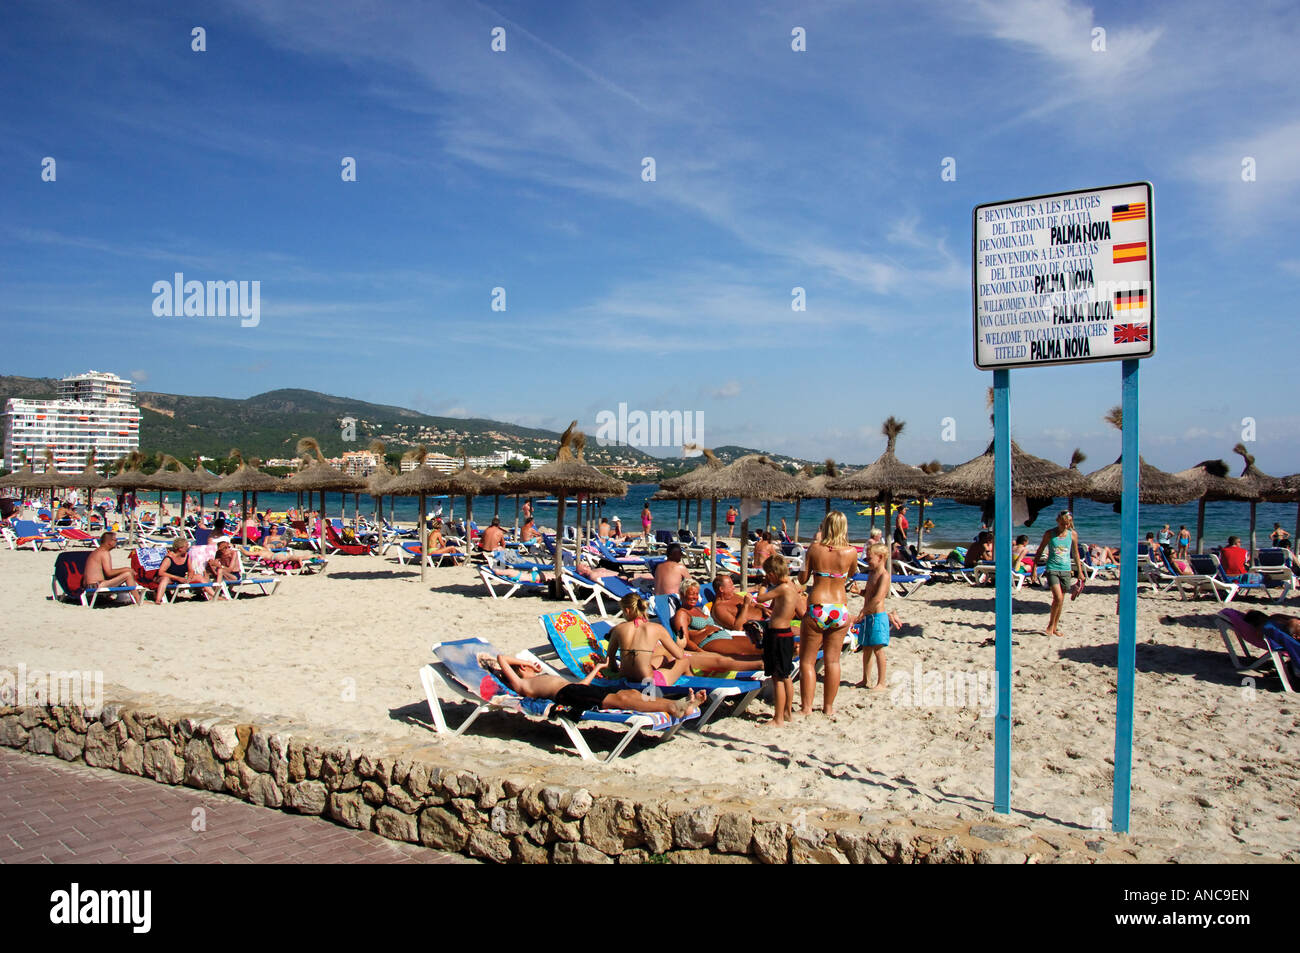 location sign and people Palma Nova beach Majorca Spain Stock Photo